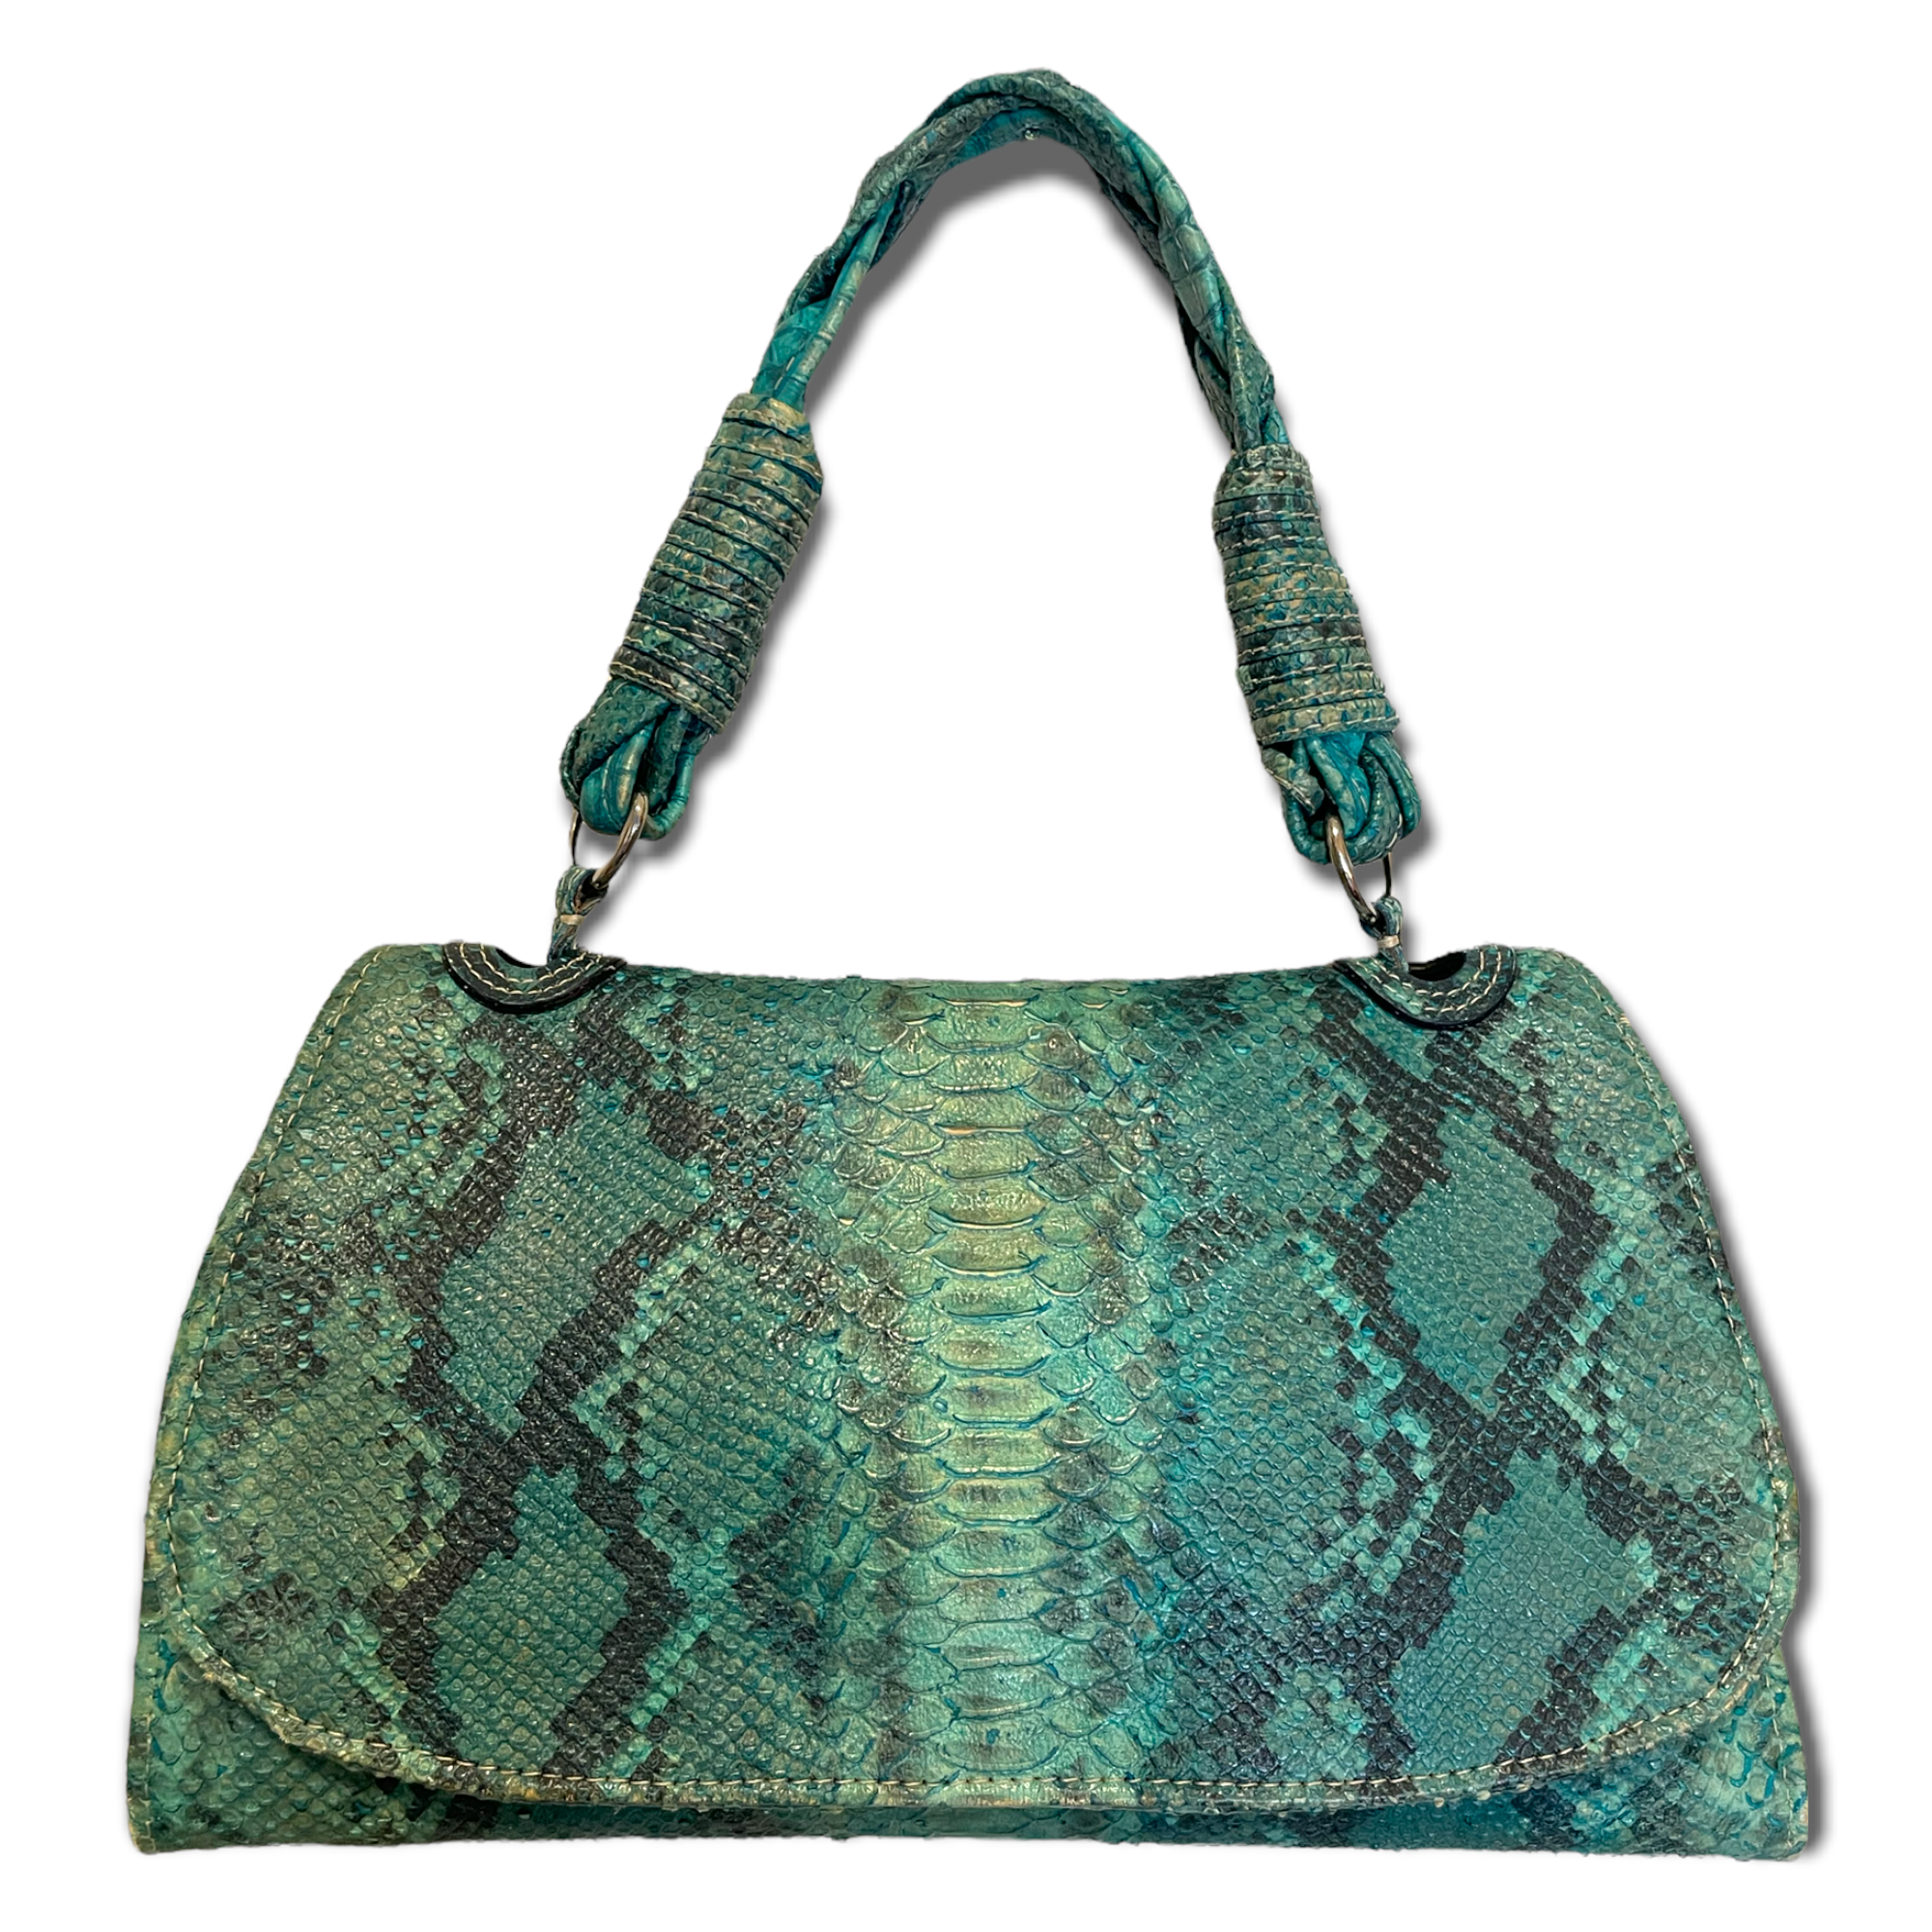 Diego Rocha Python Custom Made Handbag